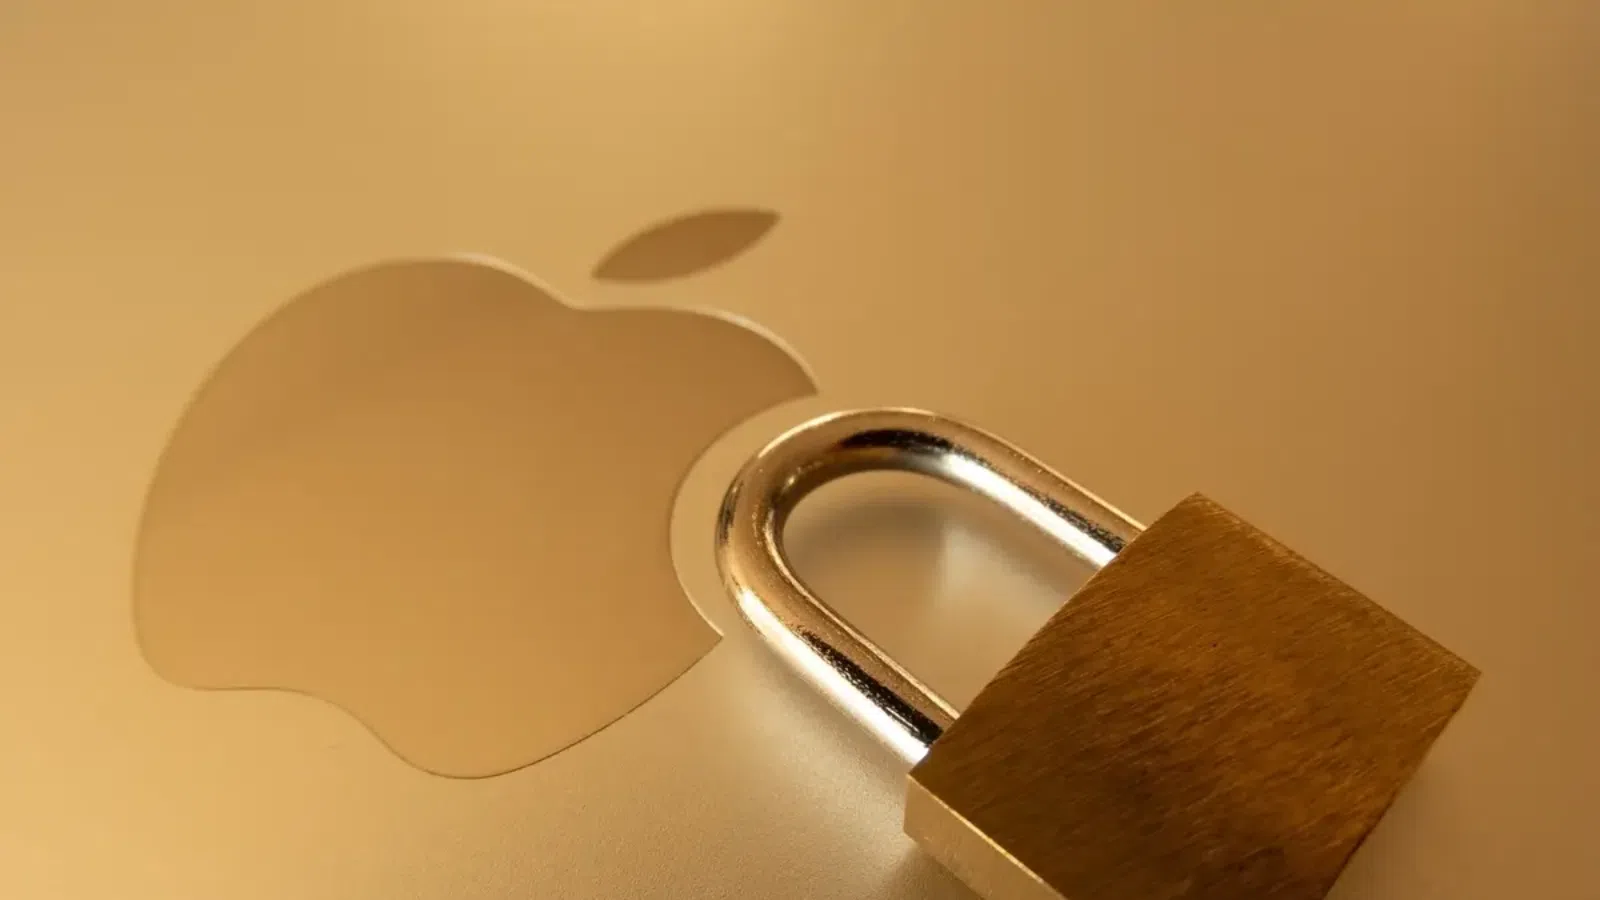 Apple afirma que ataques contra dados pessoais aumentaram 300%. Através de um documento a empresa afirma que nos últimos dois anos mais de 2,6 bilhões de registros pessoais foram expostos. Confira mais detalhes.